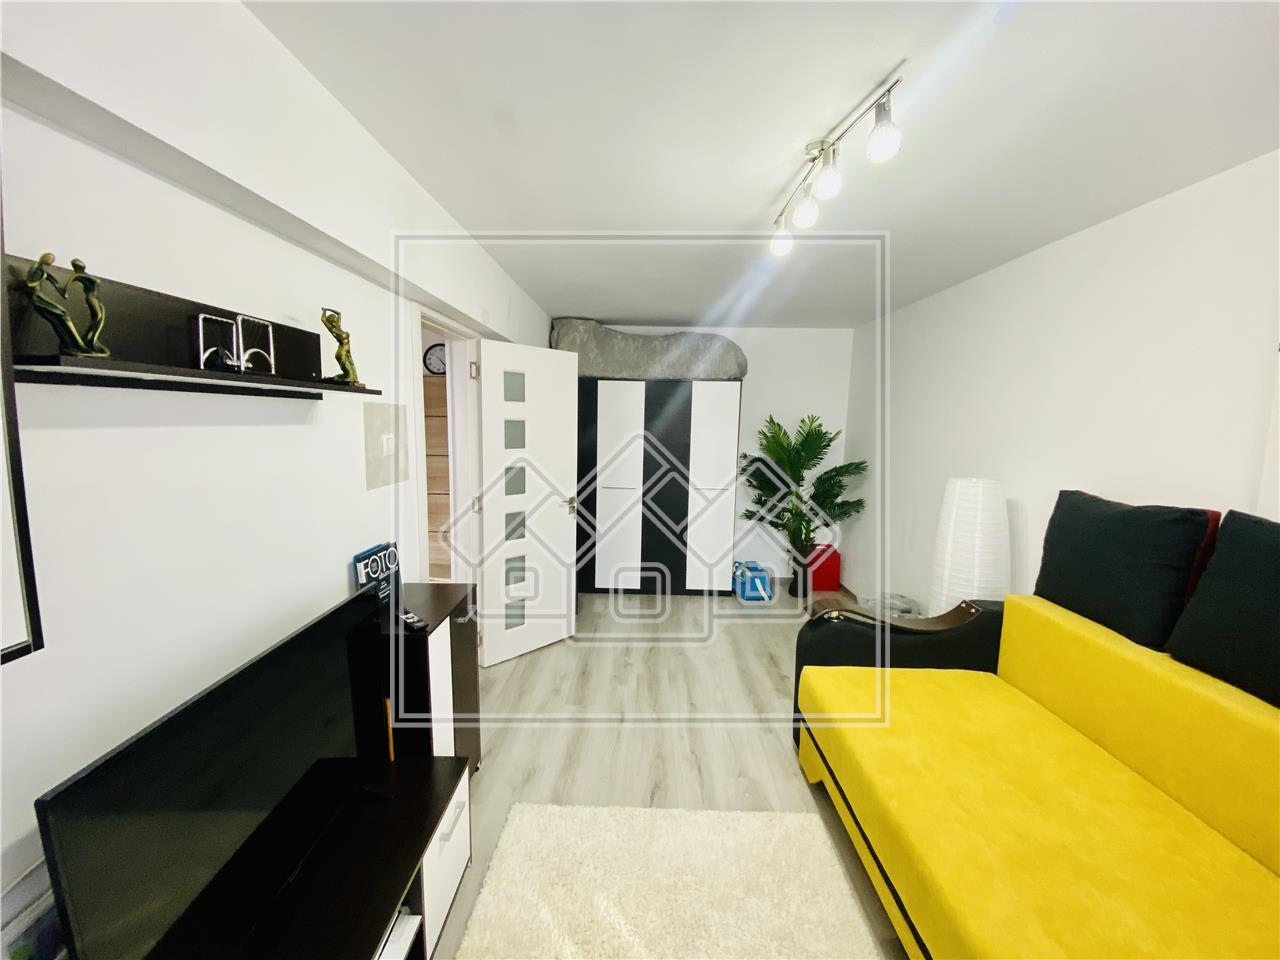 Wohnung zum Verkauf in Sibiu - 2 Zimmer, Balkon und Keller - Bereich S